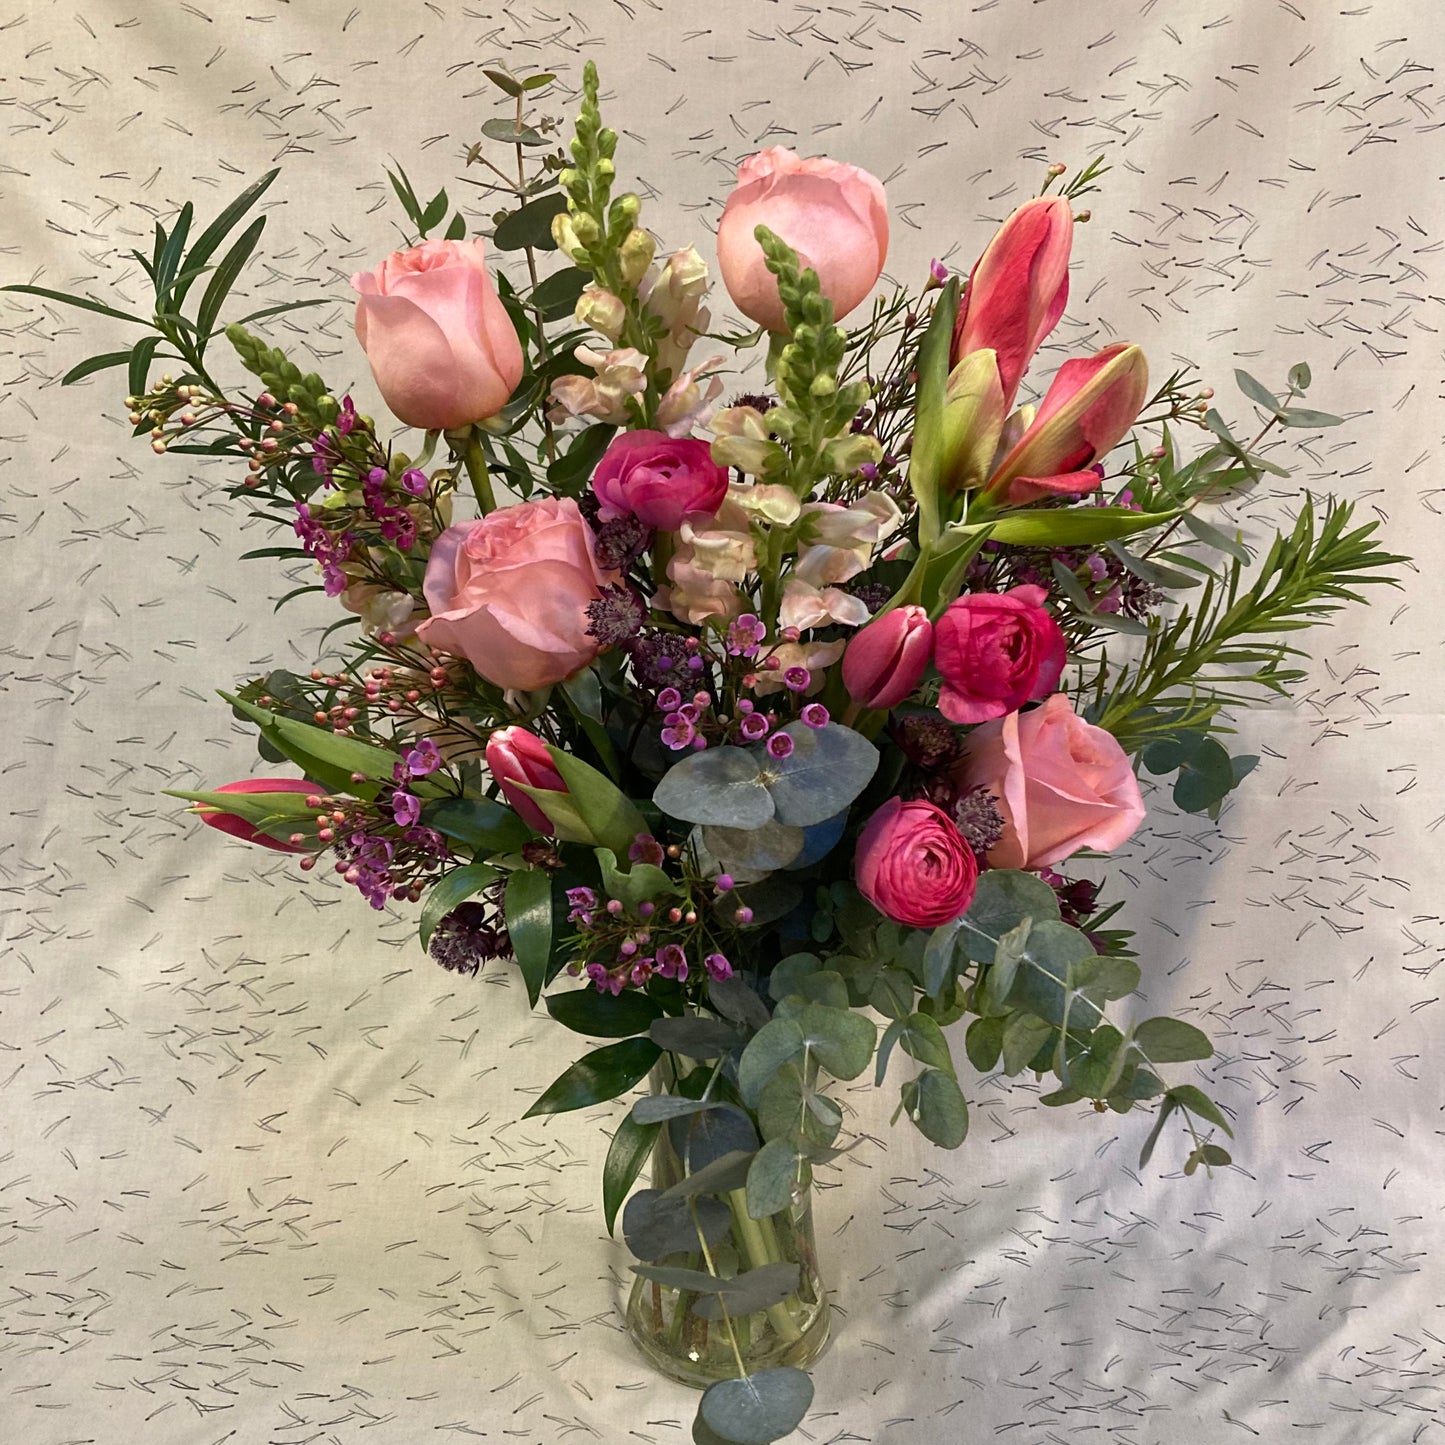 I FIORI Floral Vase Arrangement